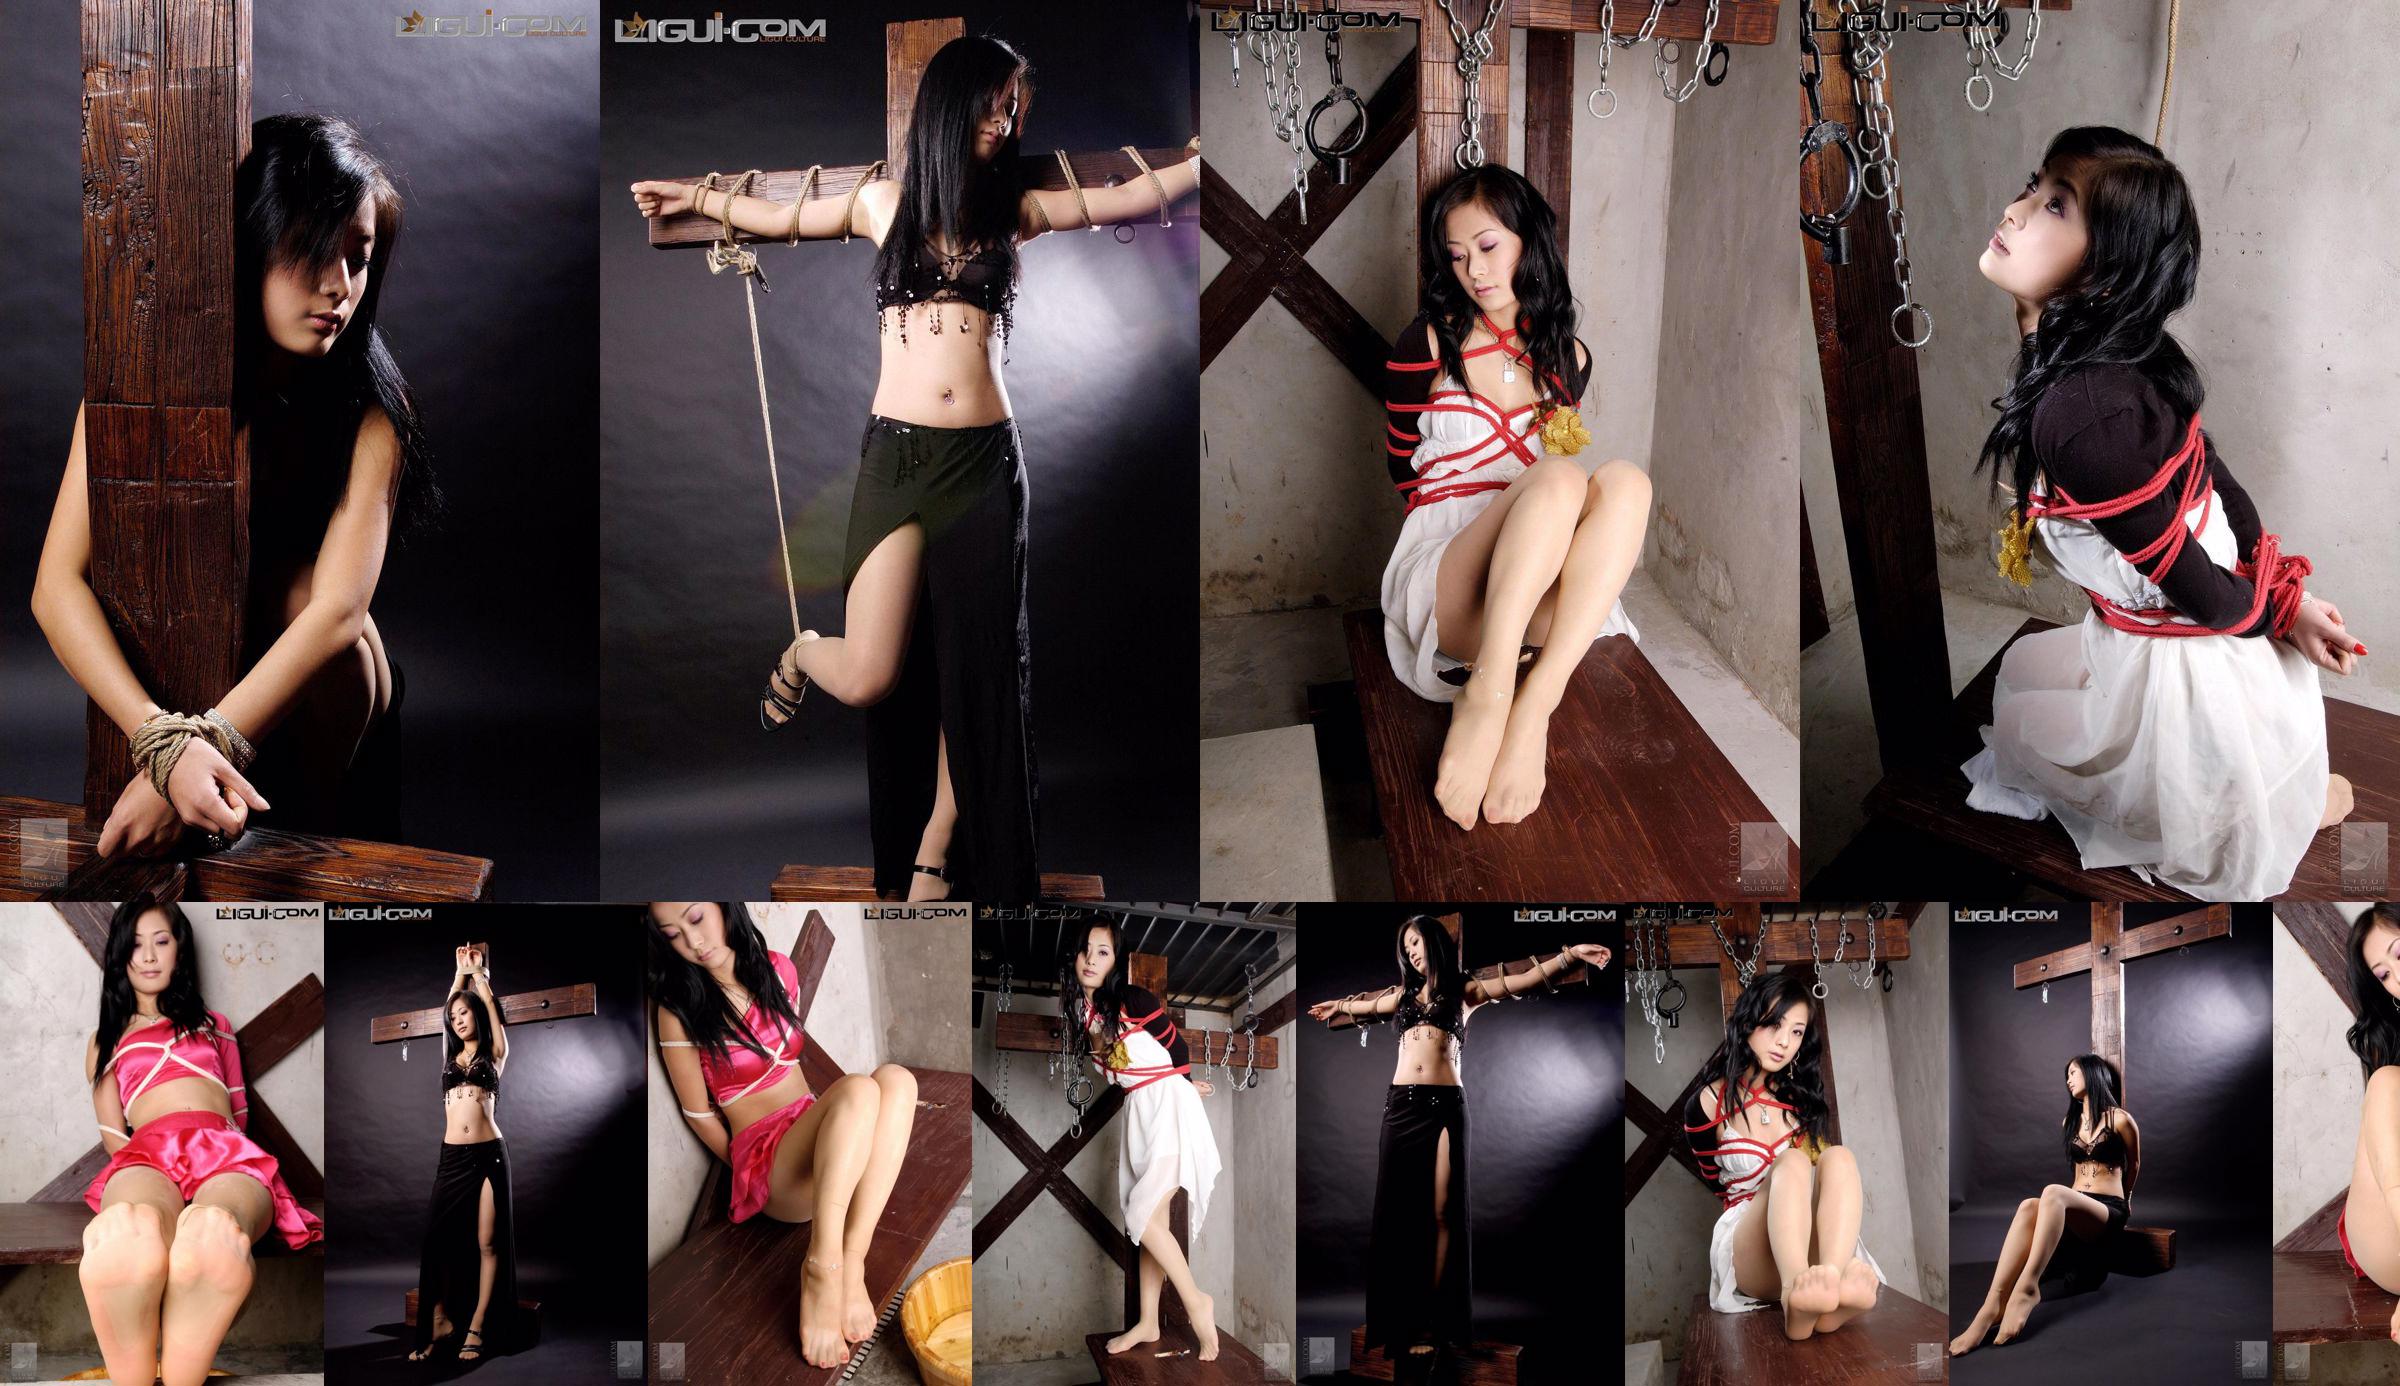 [Yuzumi Mitsuka LiGui] Zdjęcie modelki Saya „Związana czerwoną sznurem” Piękne nogi i nefrytowe stopy Zdjęcie No.145912 Strona 2